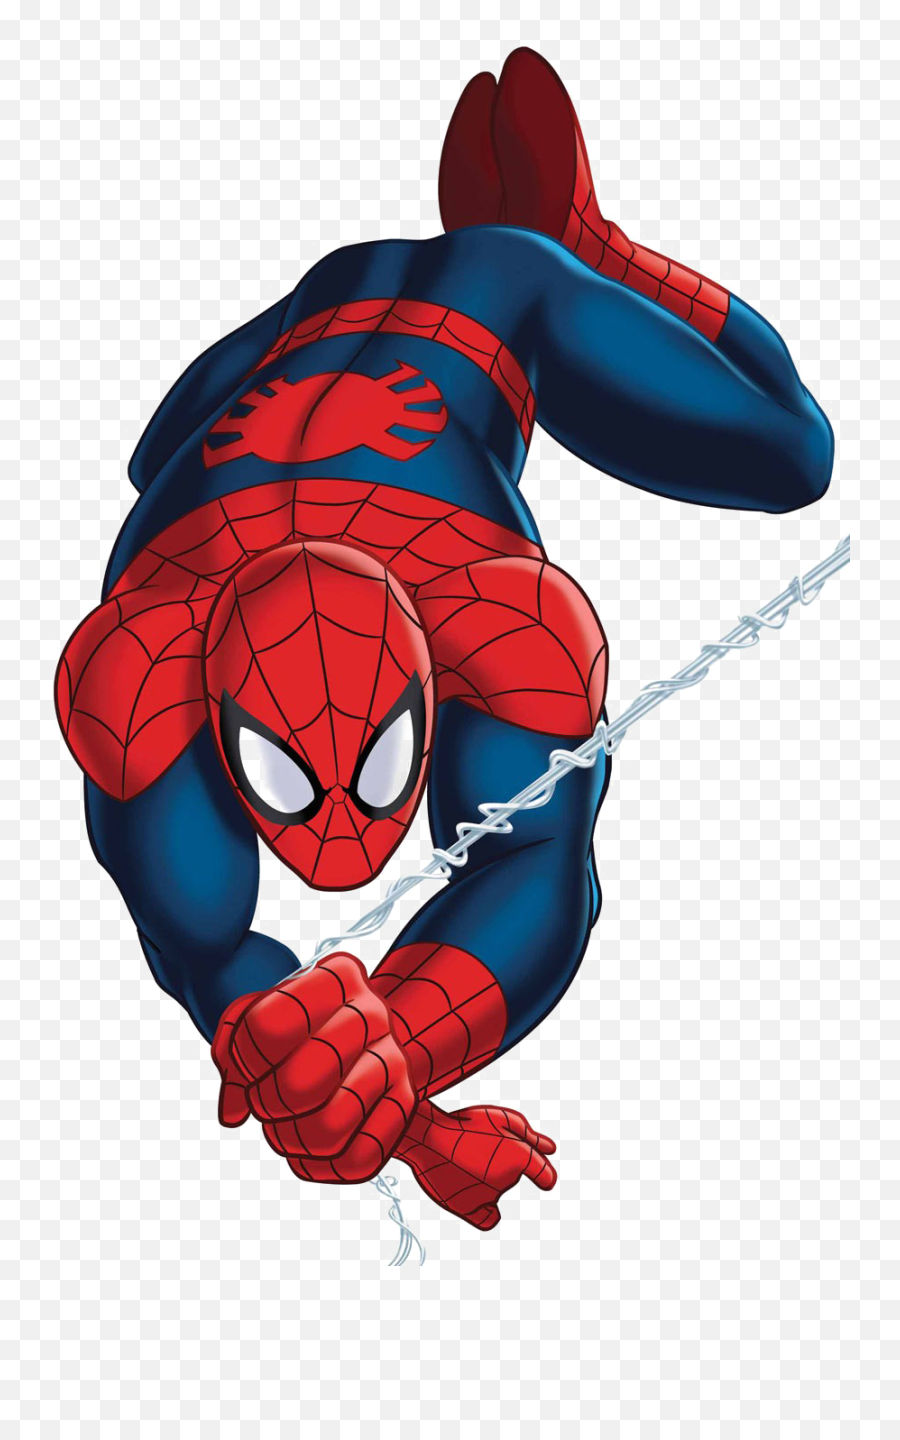 Spider - Man Cartoon Download Transparent Png Image Png Arts Marvel Universe Ultimate,Cartoon Spider Png